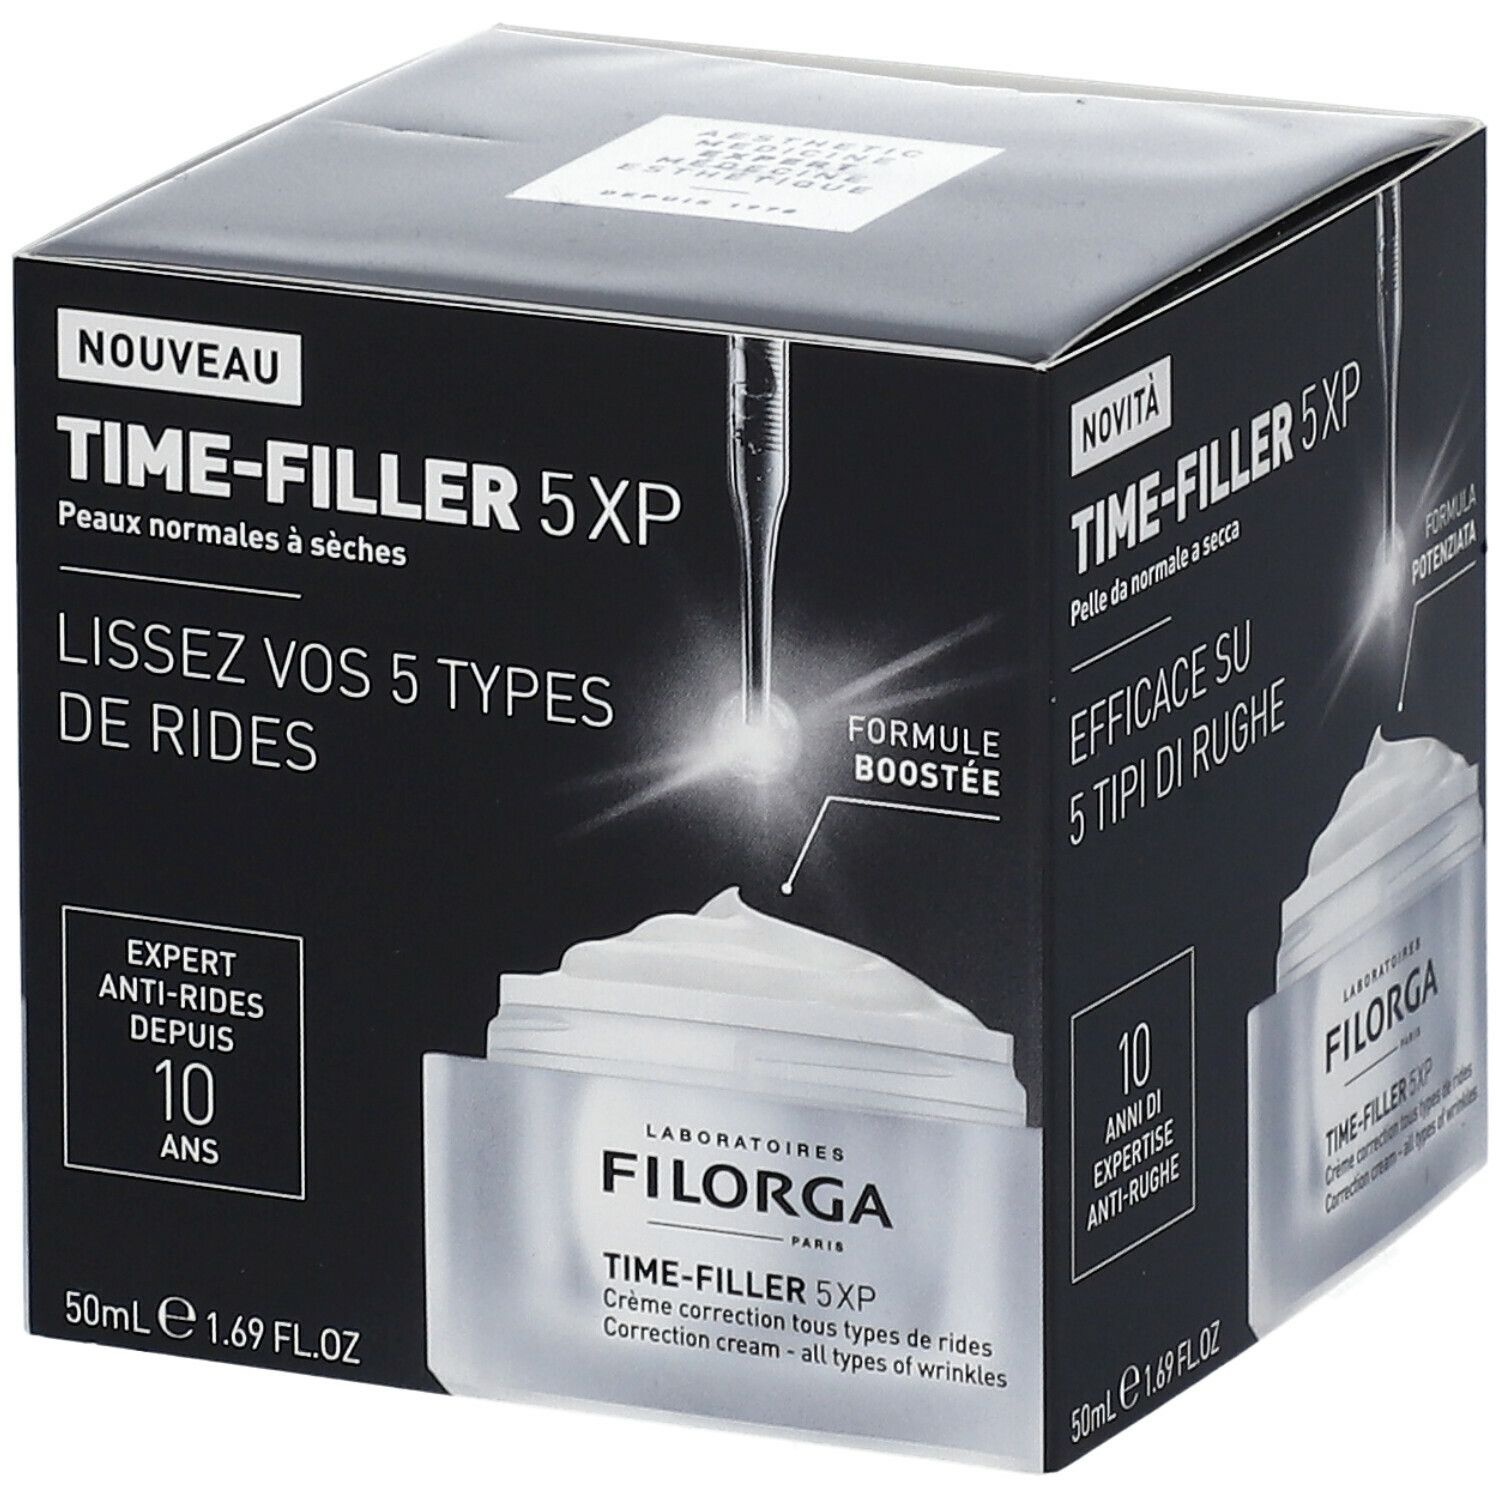 FILORGA TIme-Filler 5XP 50 ml crème